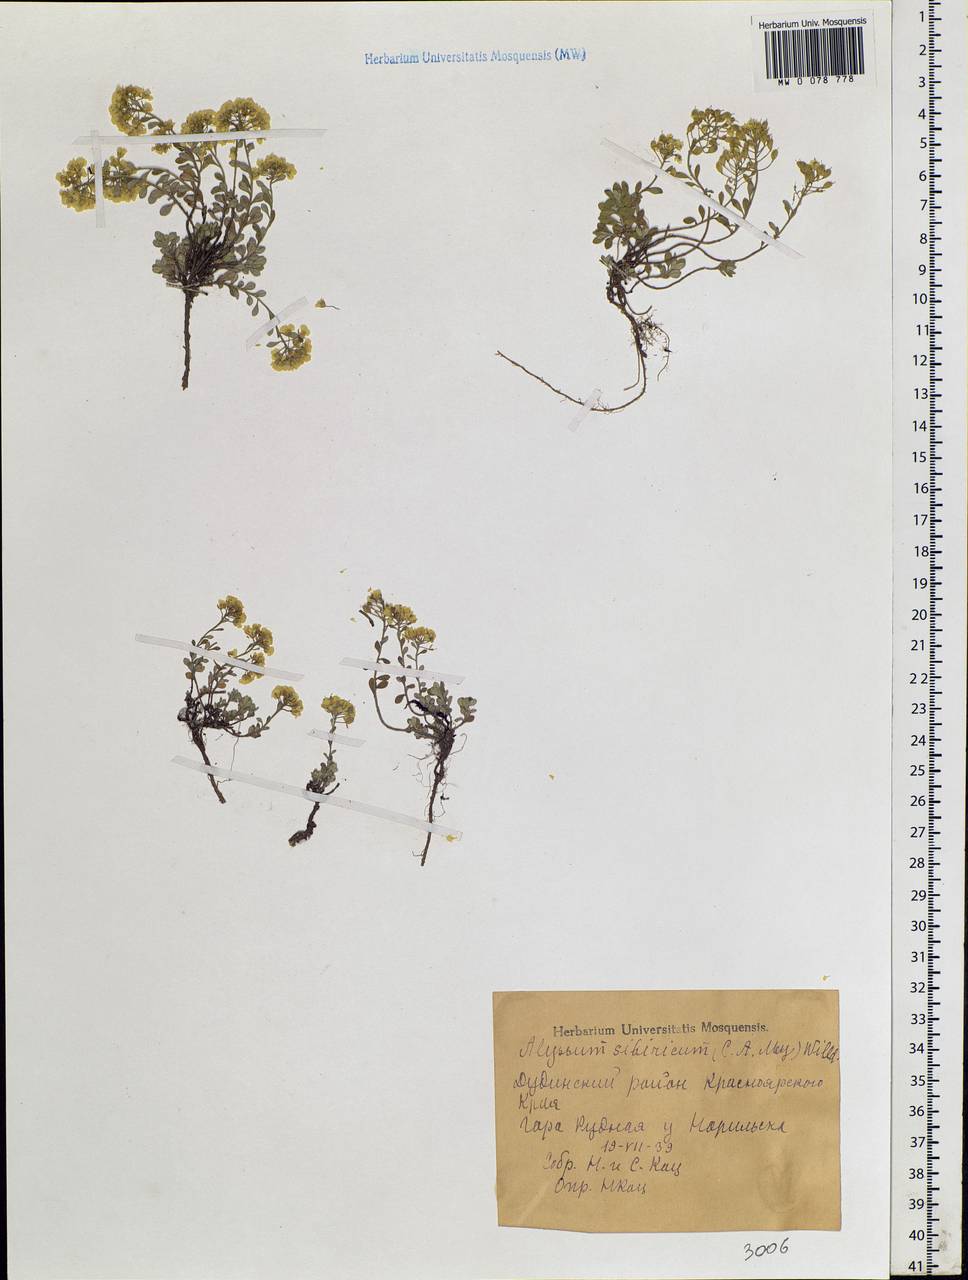 Alyssum sibiricum Willd., Siberia, Central Siberia (S3) (Russia)